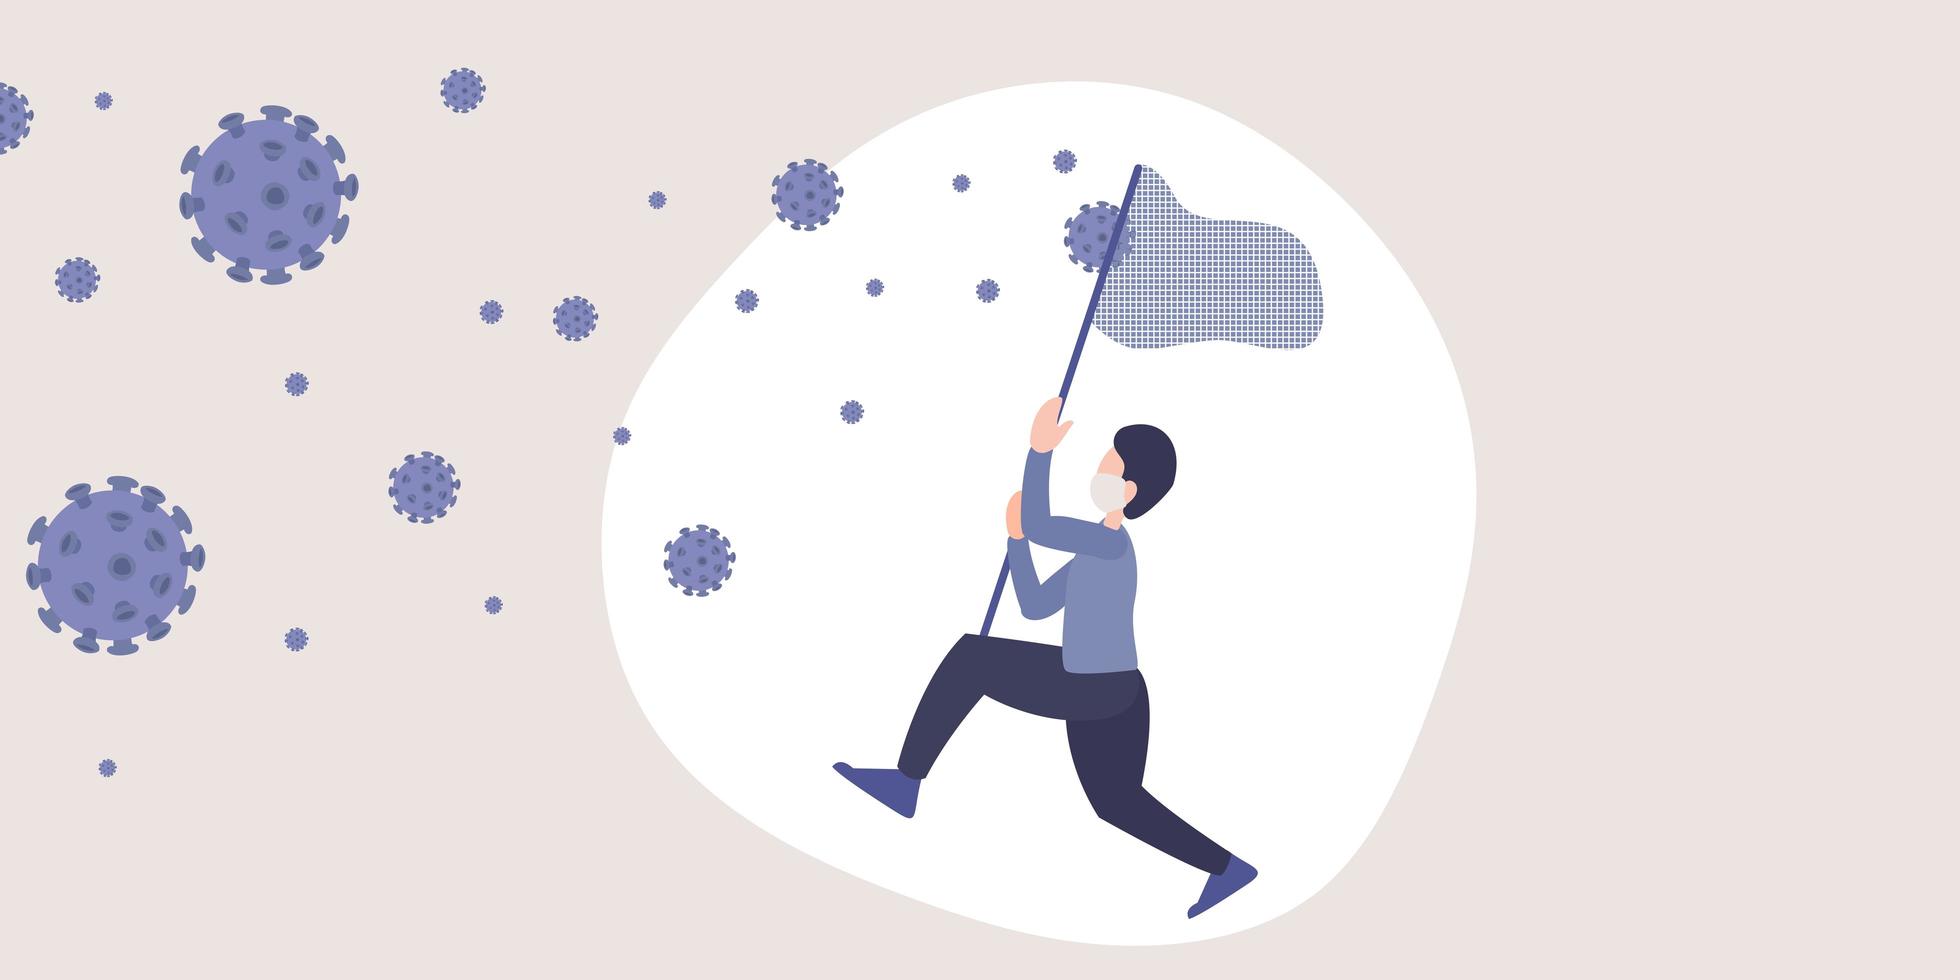 Ilustración plana de la metáfora del coronavirus 2019-ncov. vector de un hombre que intenta atrapar virus en el aire con un bastón de red.